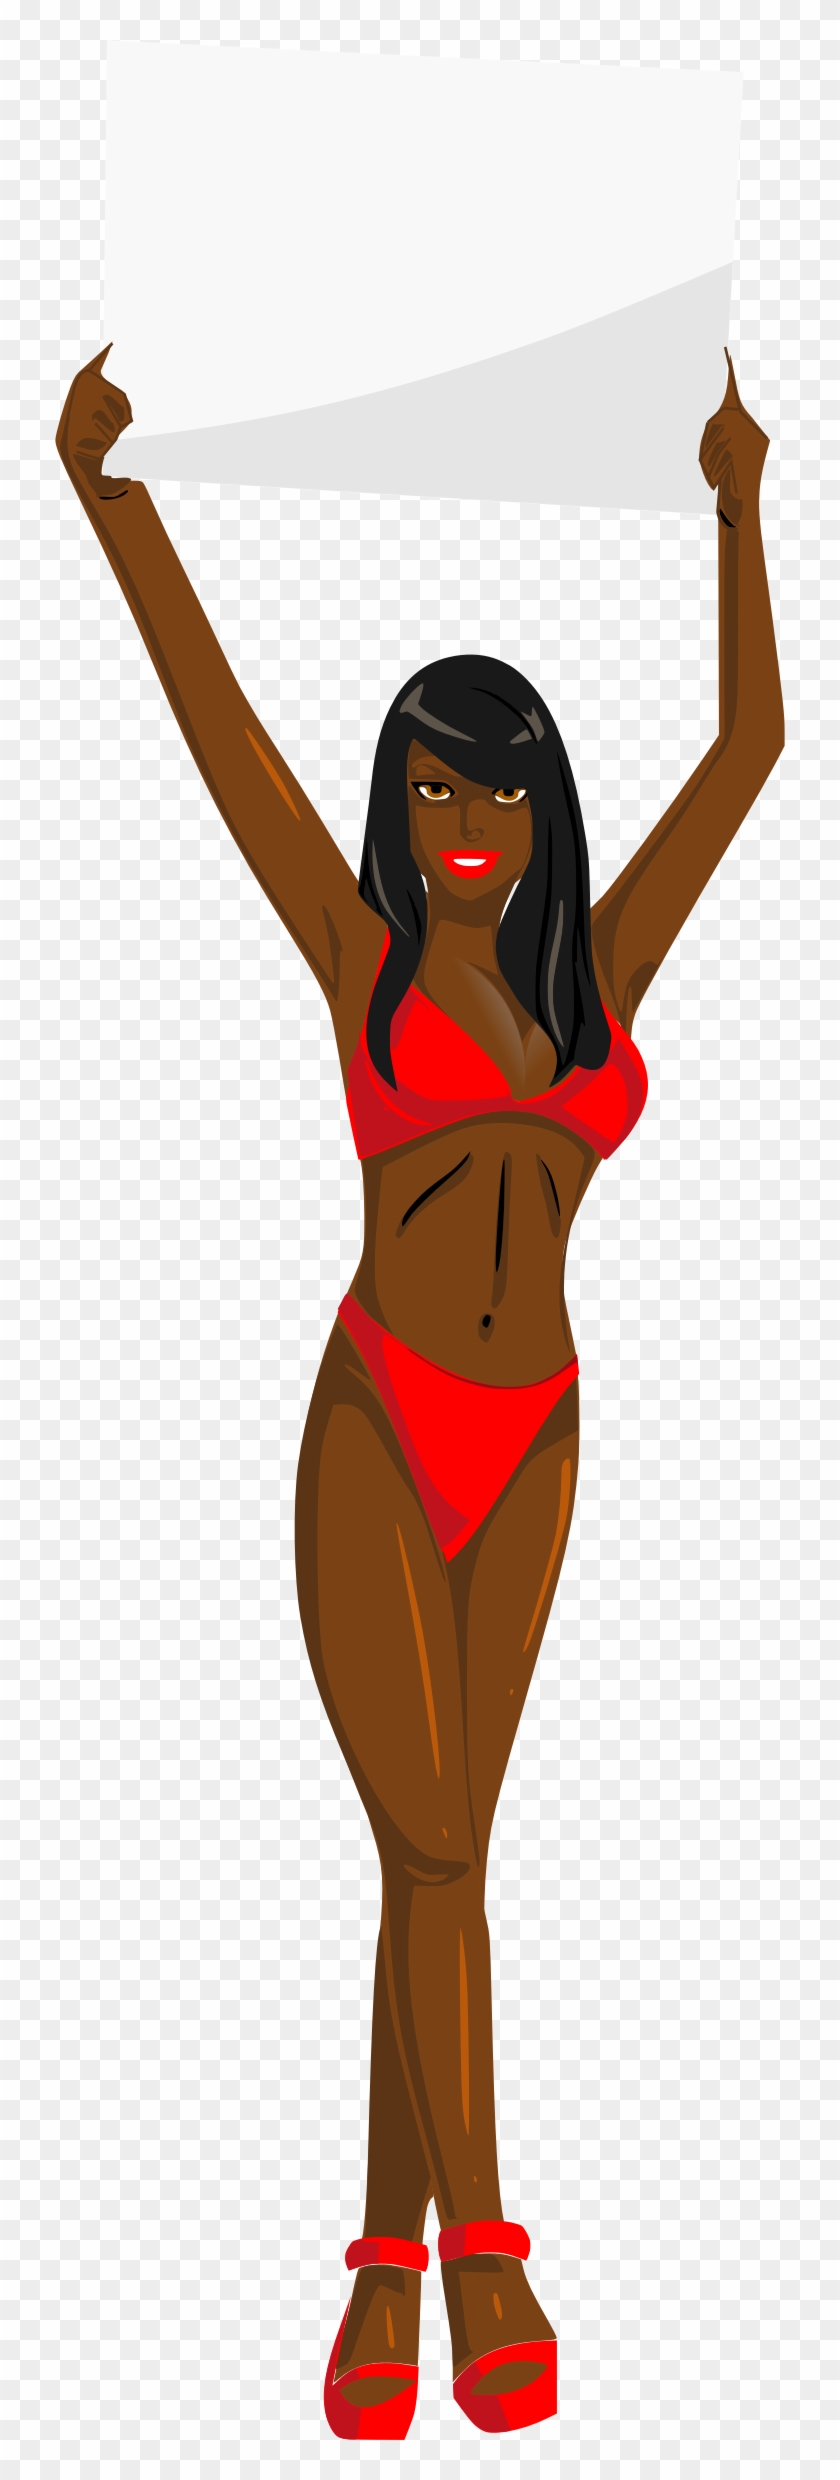 Big Image - Bikini Black Girl Cartoon #429397